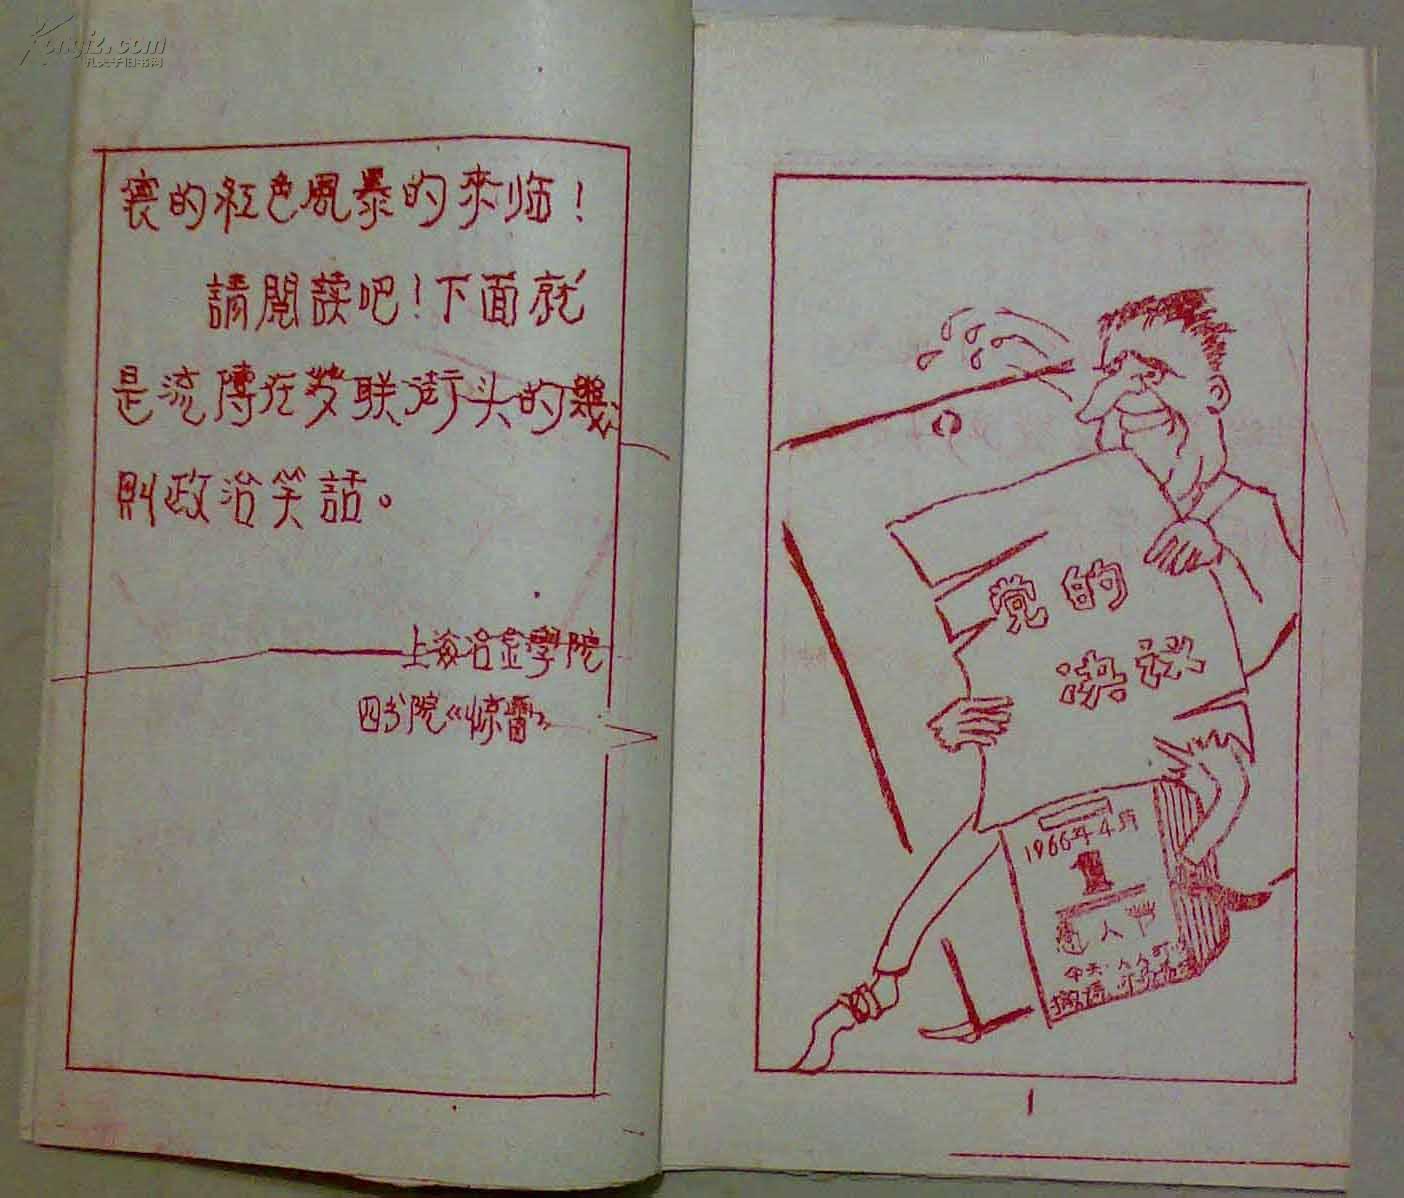 《流传在苏联街头的政治笑话》红色油印漫画本